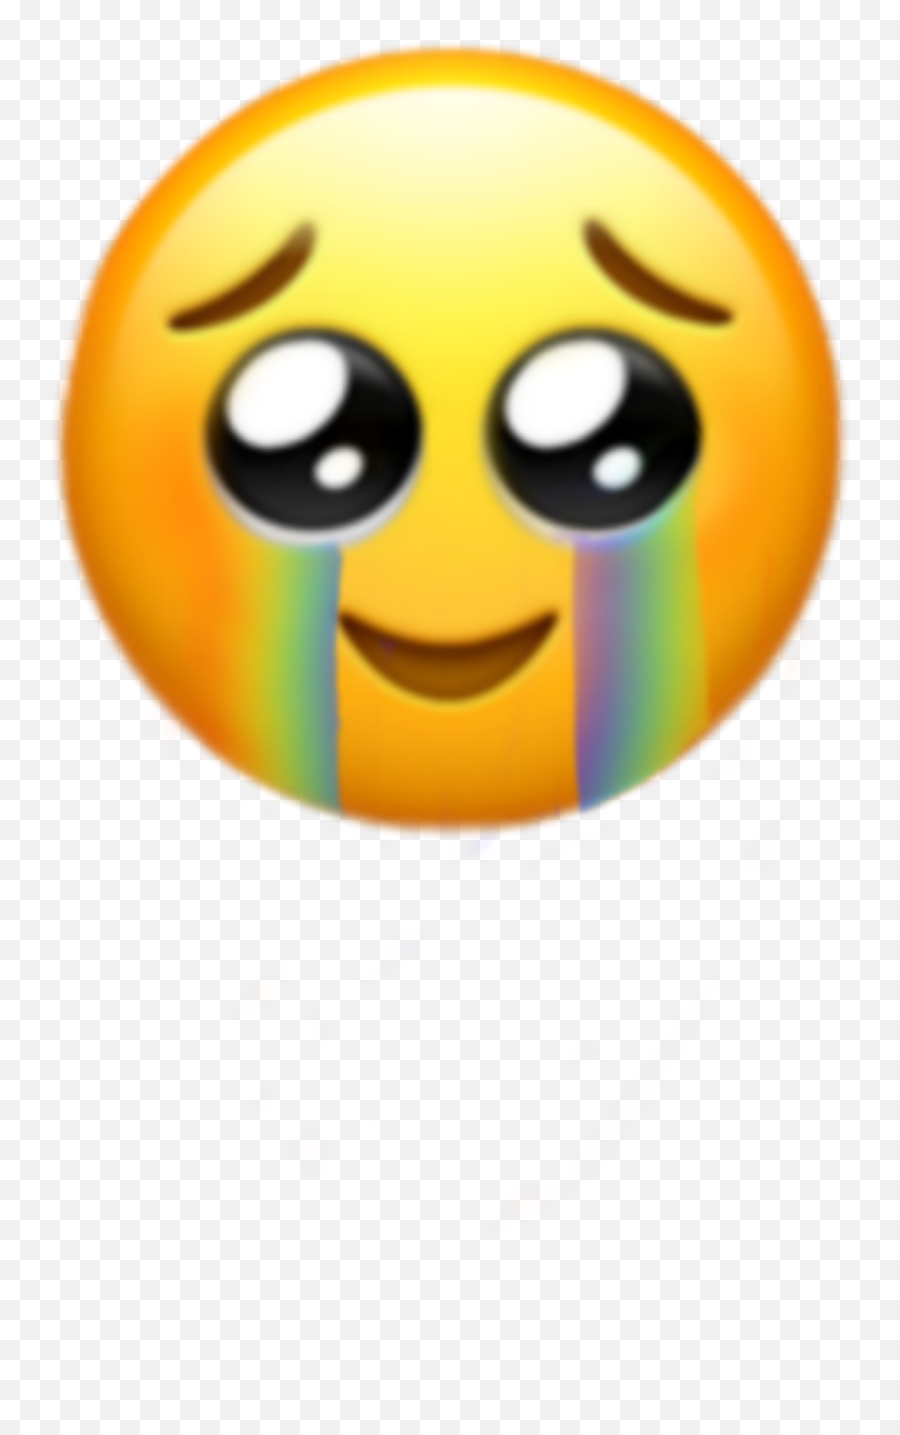 Sad Emotion Sticker By Marsyajacob - After Mental Breakdown Emoji,Sad Emotion Pictures